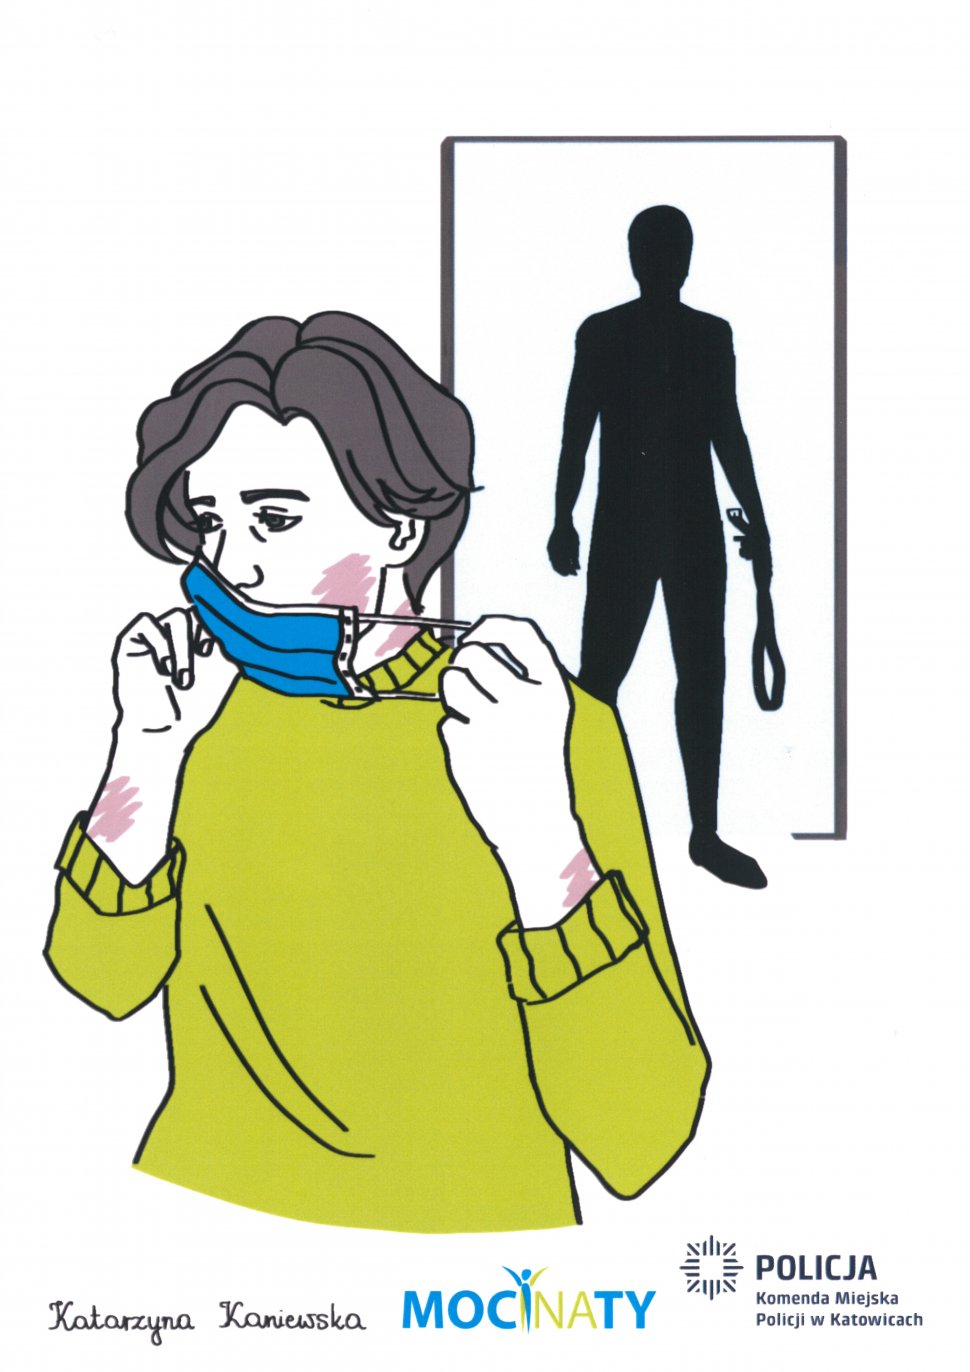 zdjęcie kolorowe: plakat graficzny przedstawiający kobietę z posiniaczoną twarzą zasłaniającą siniaki maseczka ochronna w tle cień mężczyzny trzymającego w ręce pas